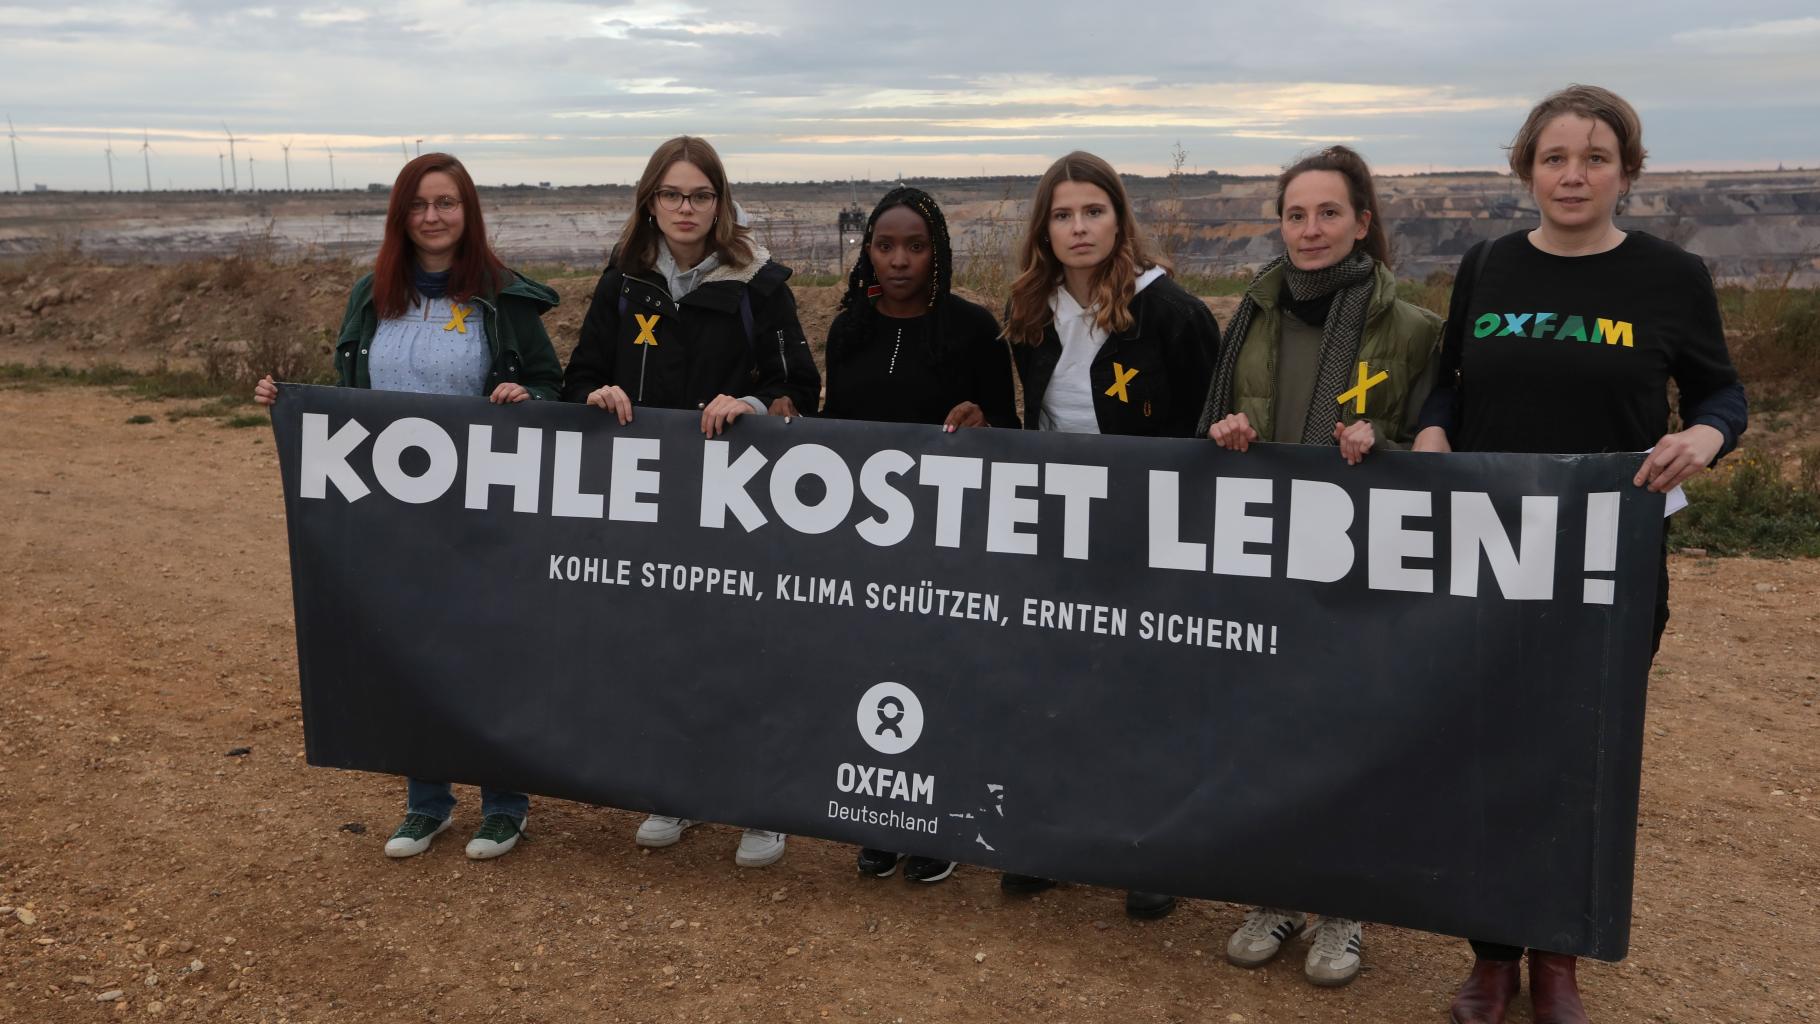 Sechs Frauen stehen mit einem schwarzen Banner in der Hand am Rand des Tagebaus Garzweiler. Auf dem Banner steht: Kohle kostet leben! Kohle stoppen, Klima schützen, Ernten sichern!